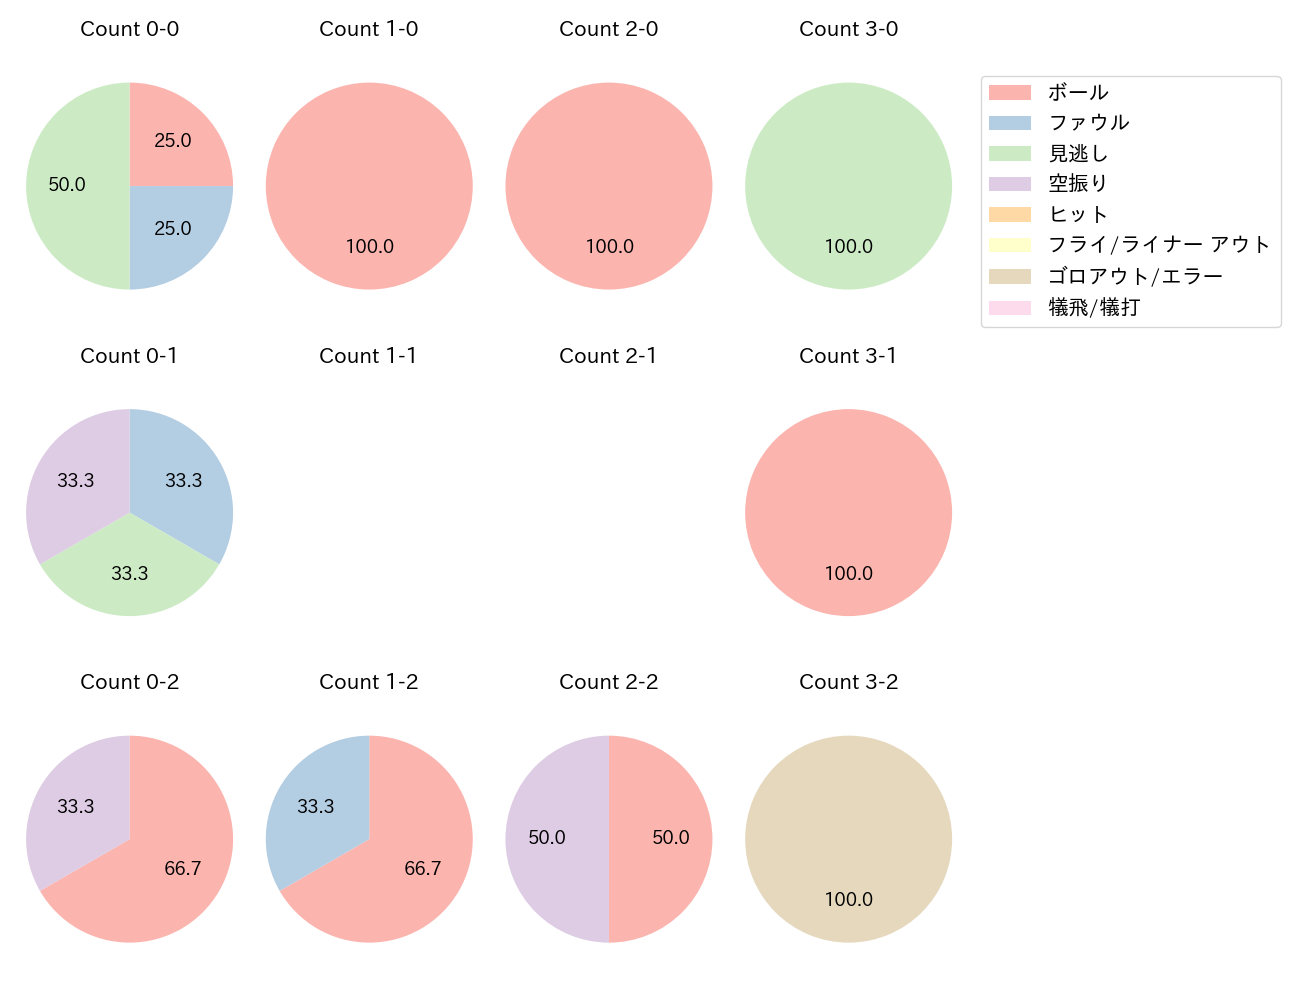 小川 泰弘の球数分布(2023年6月)